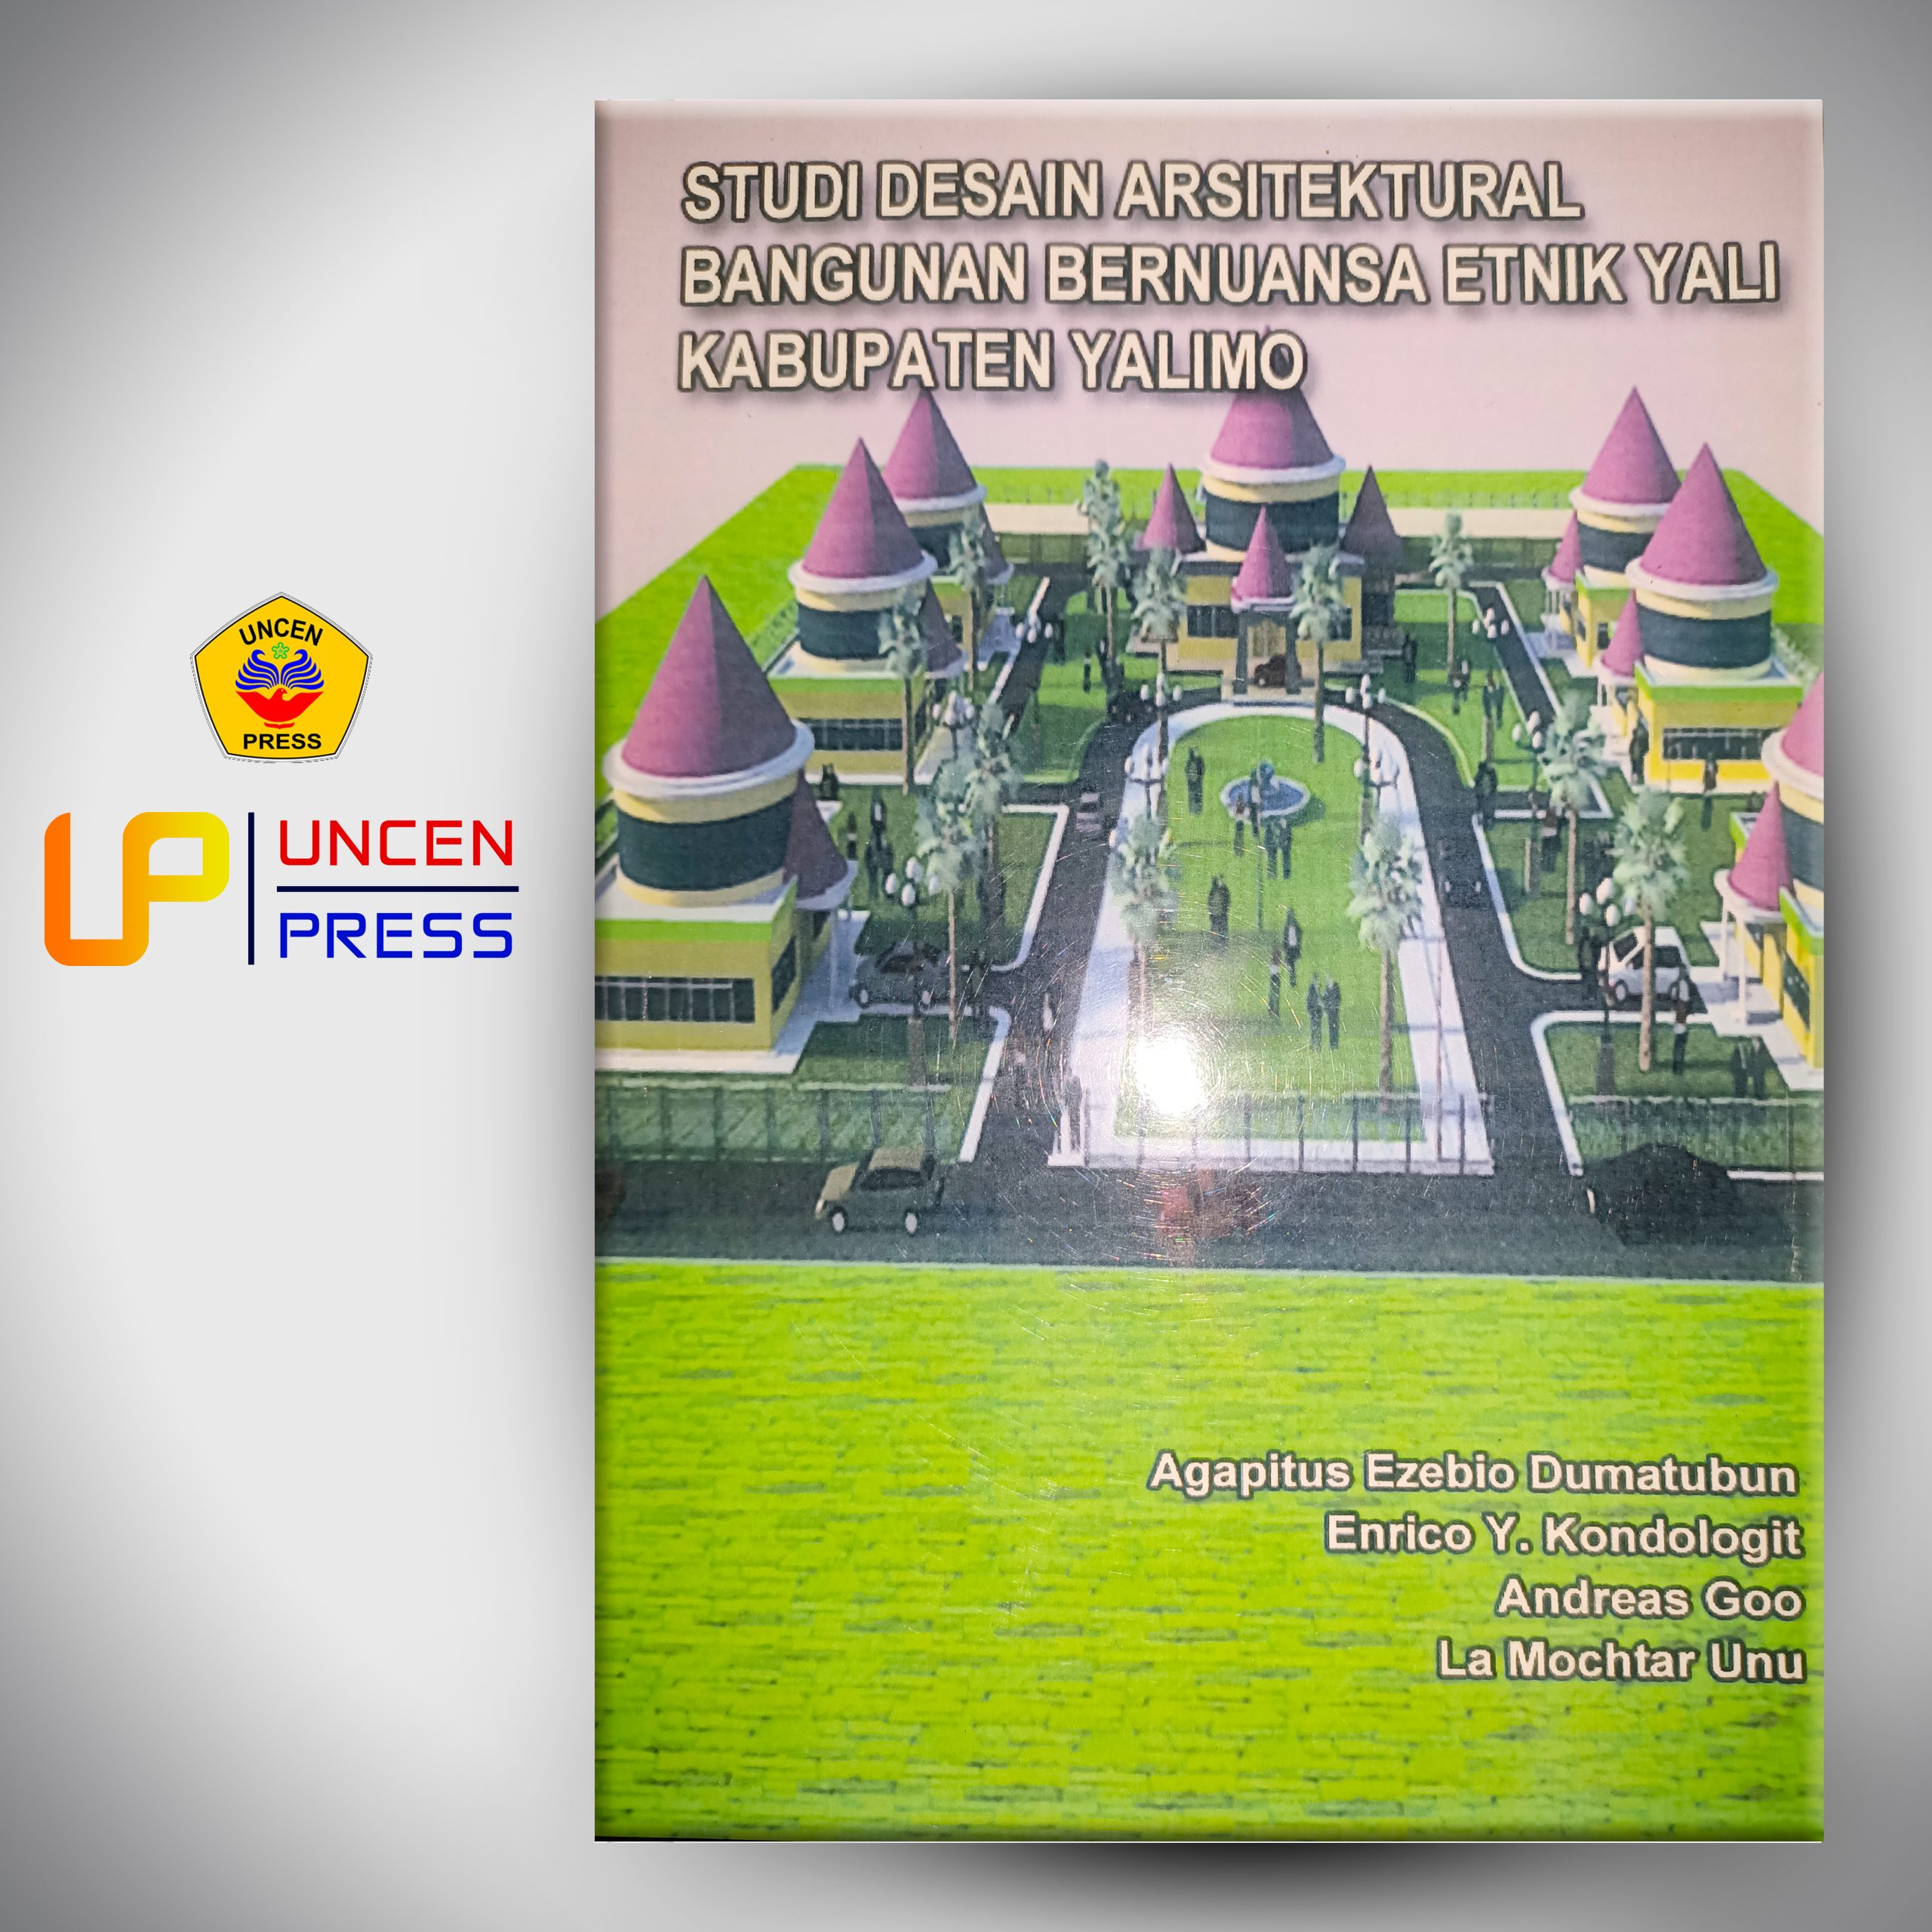 Studi Desain Arsitektural Bangunan Bernuansa Etnik Yali Kabupaten Yalimo